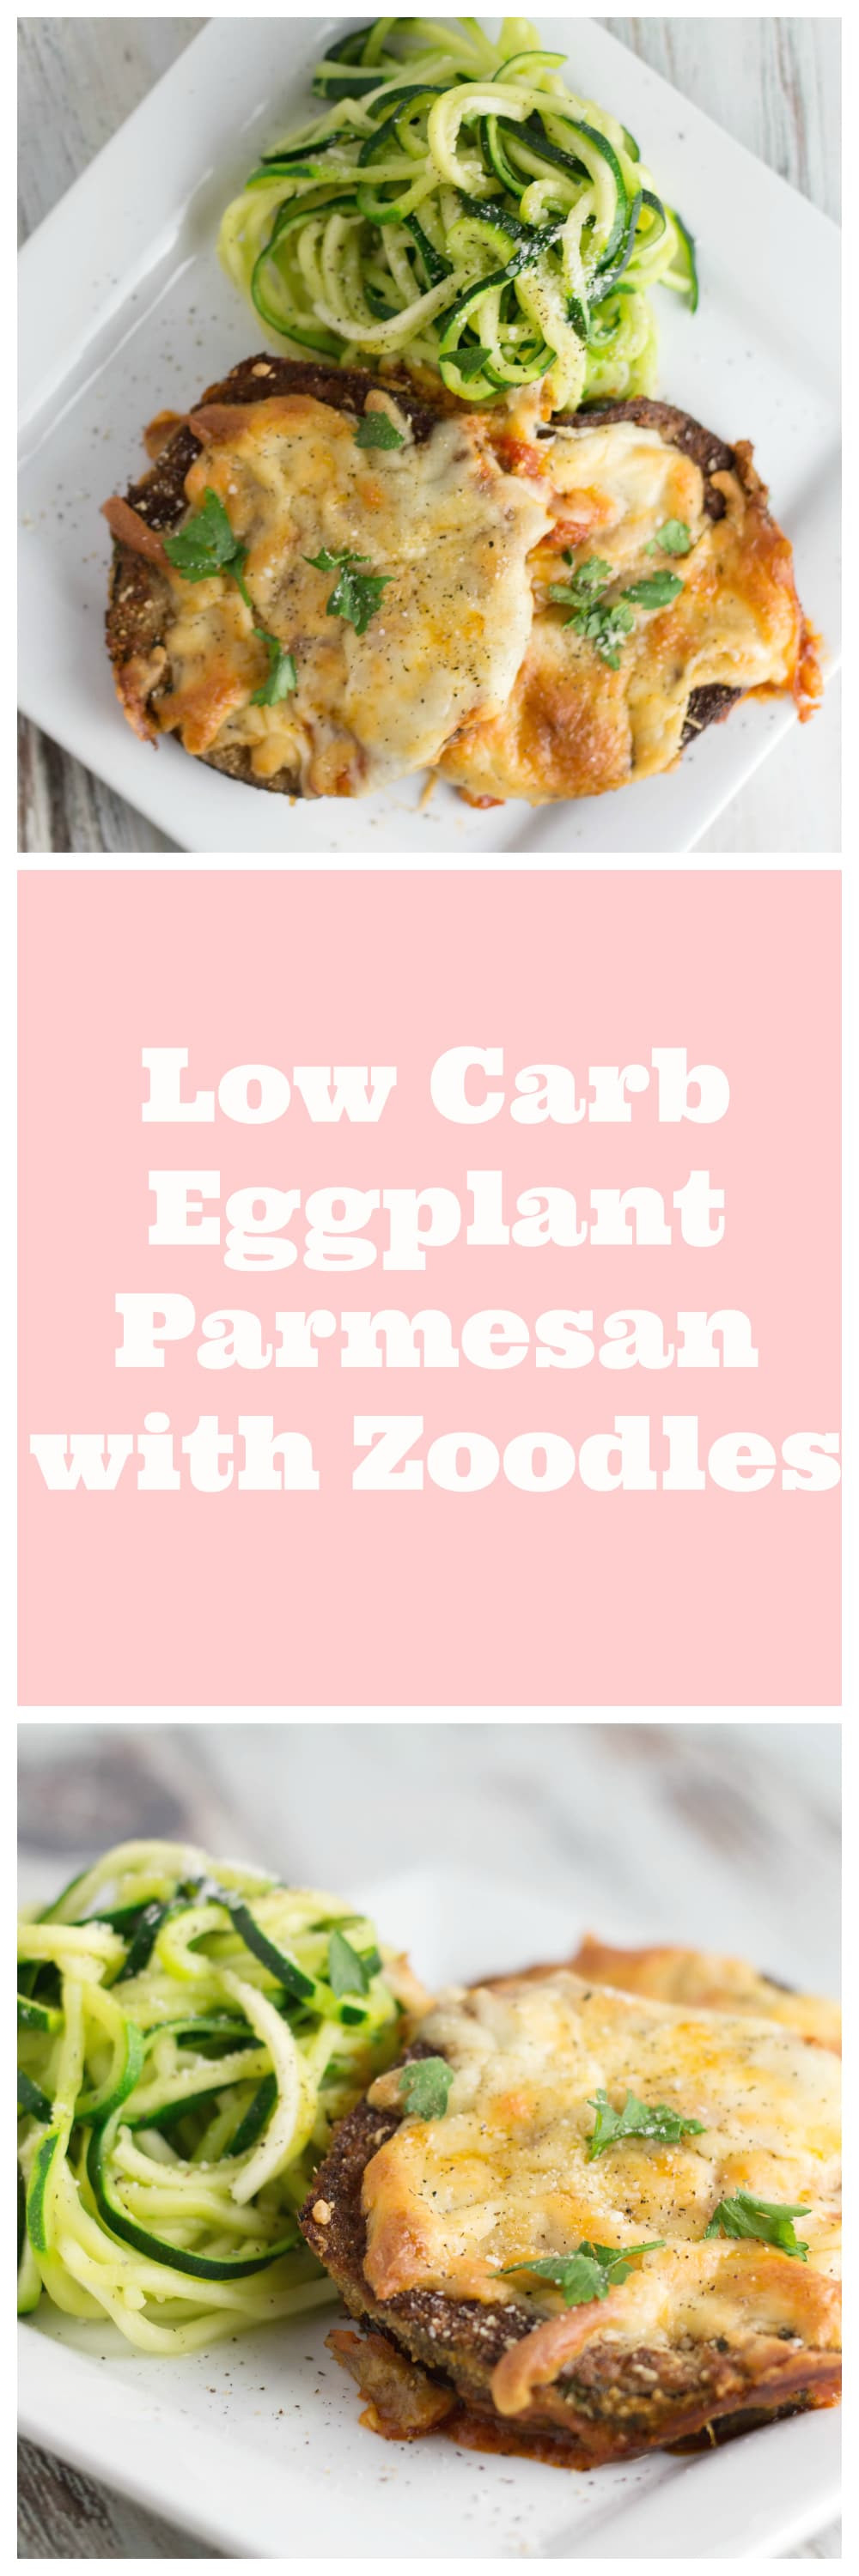 Low Carb Eggplant Parmesan
 Low Carb Eggplant Parmesan with Zoodles Krolls Korner